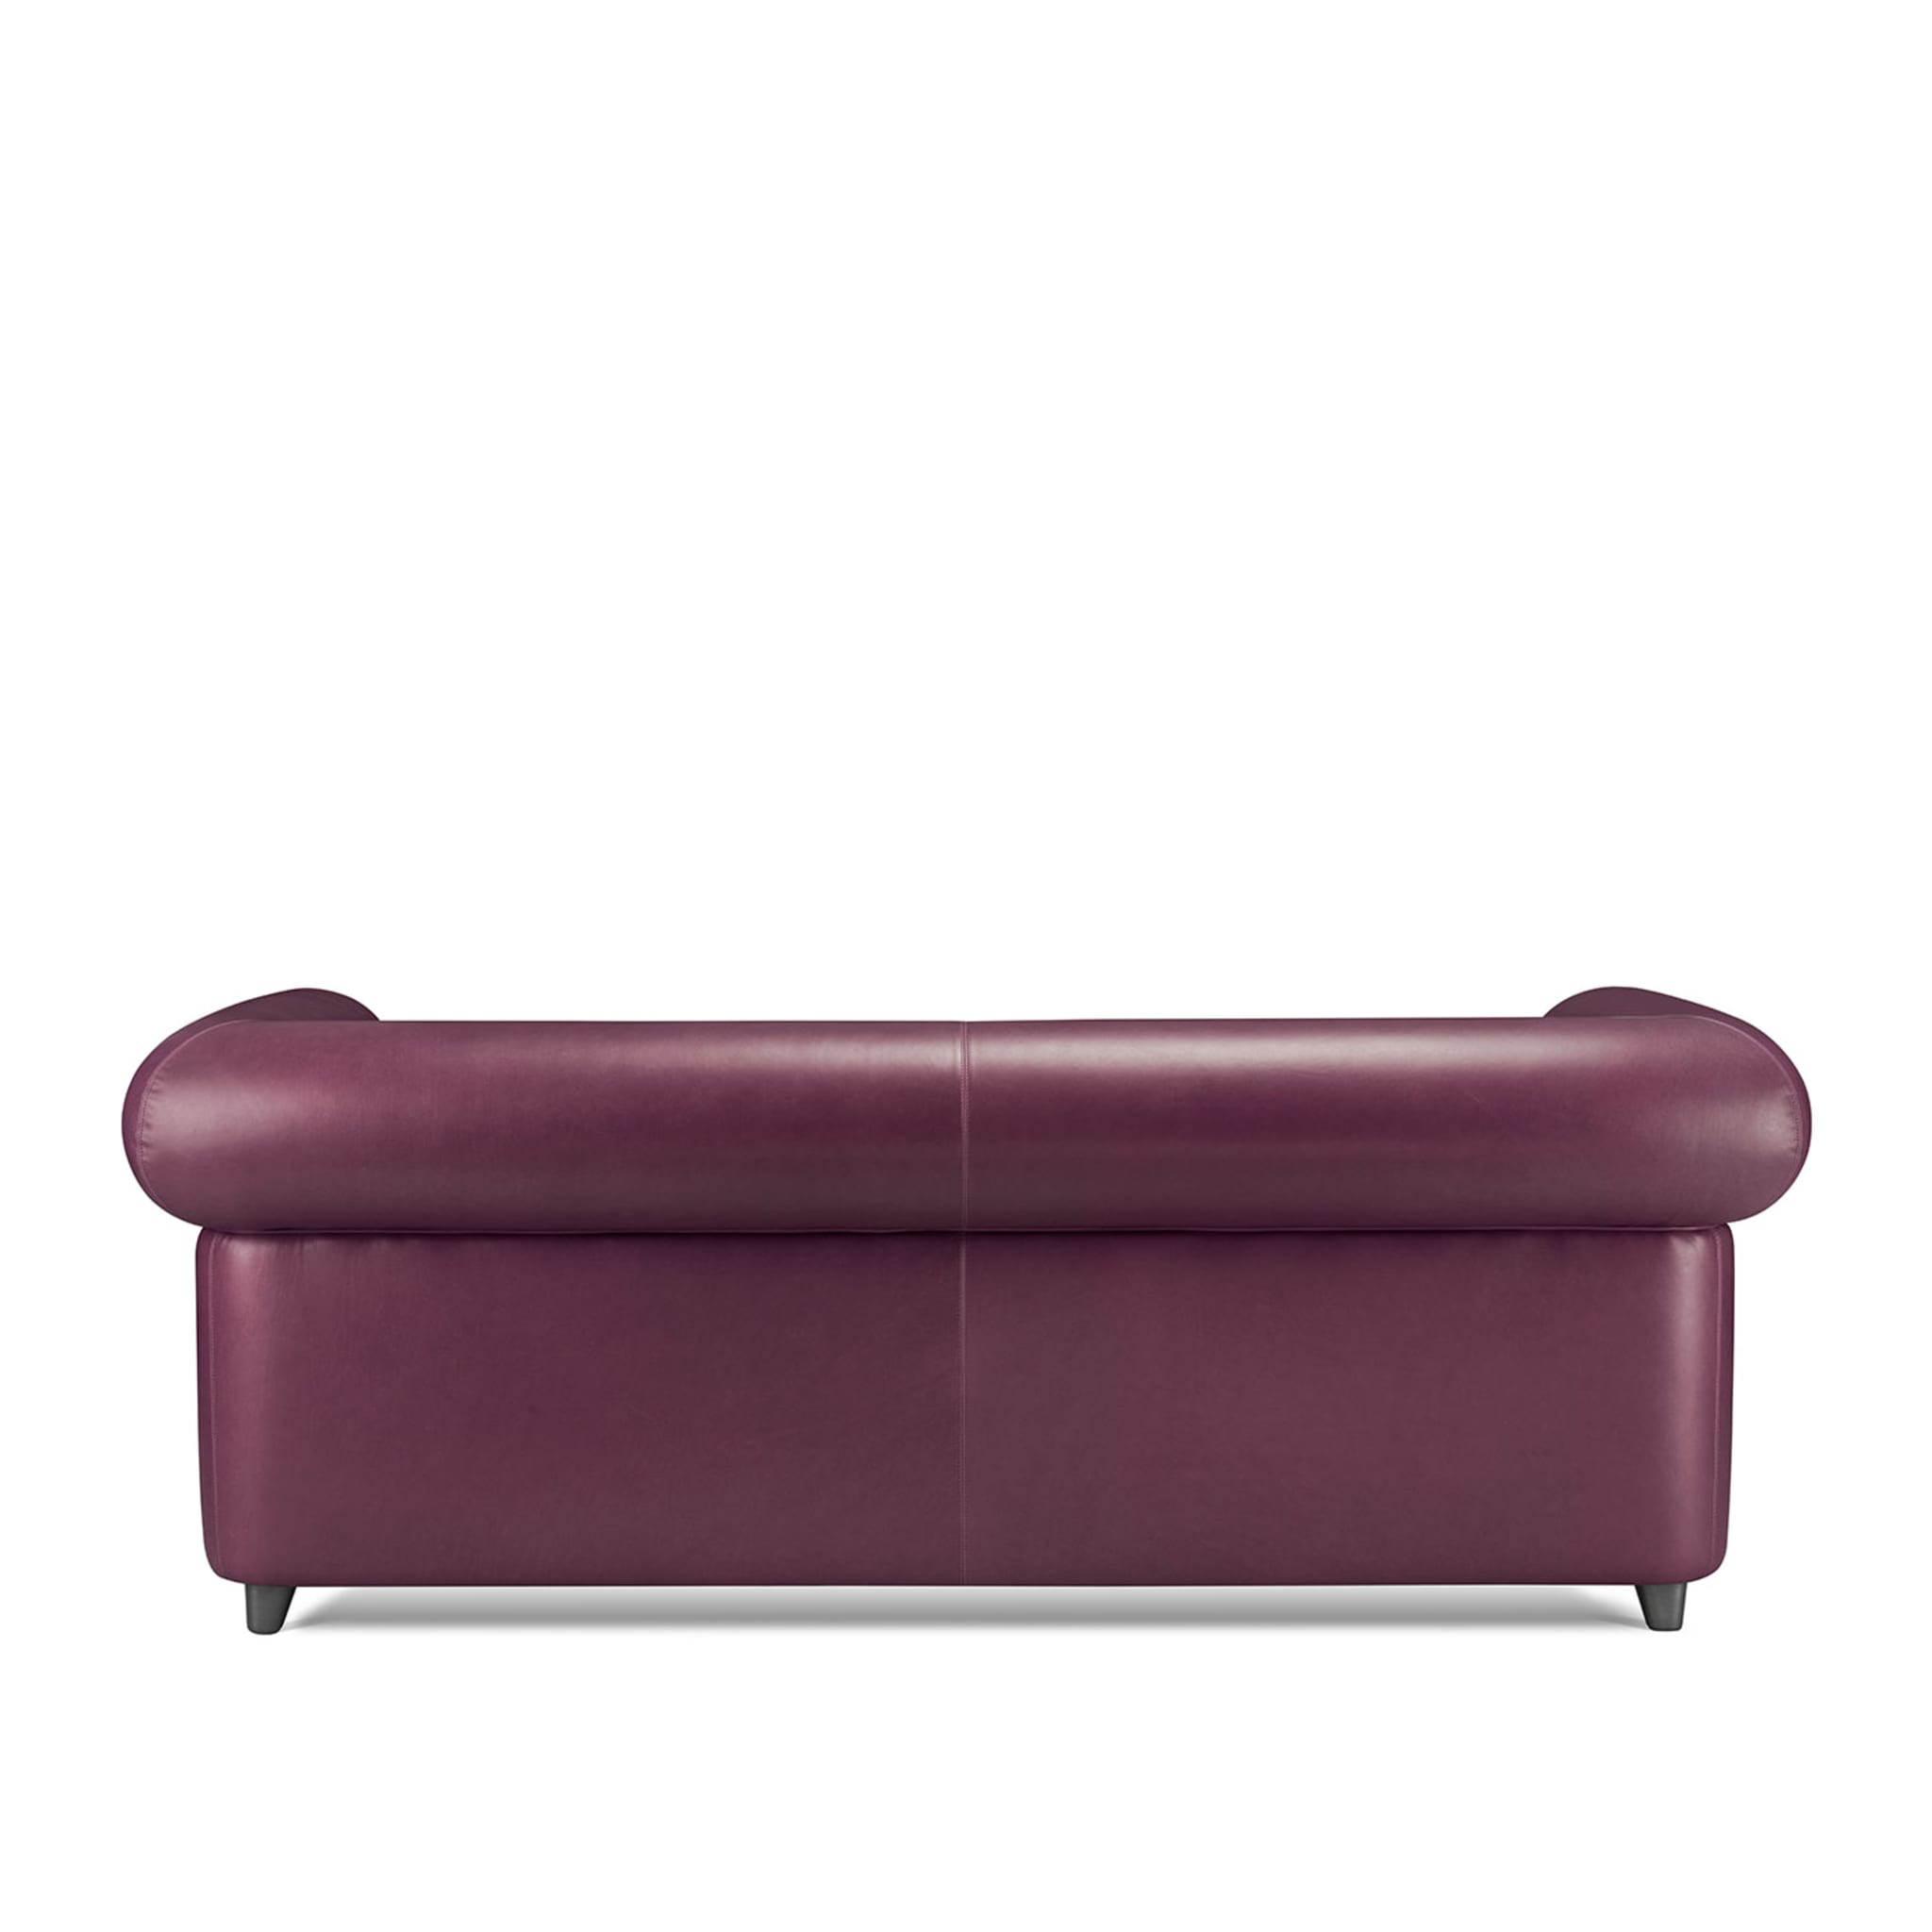 Portofino 2-Seater Purple Sofa by Stefano Giovannoni - Vue alternative 3